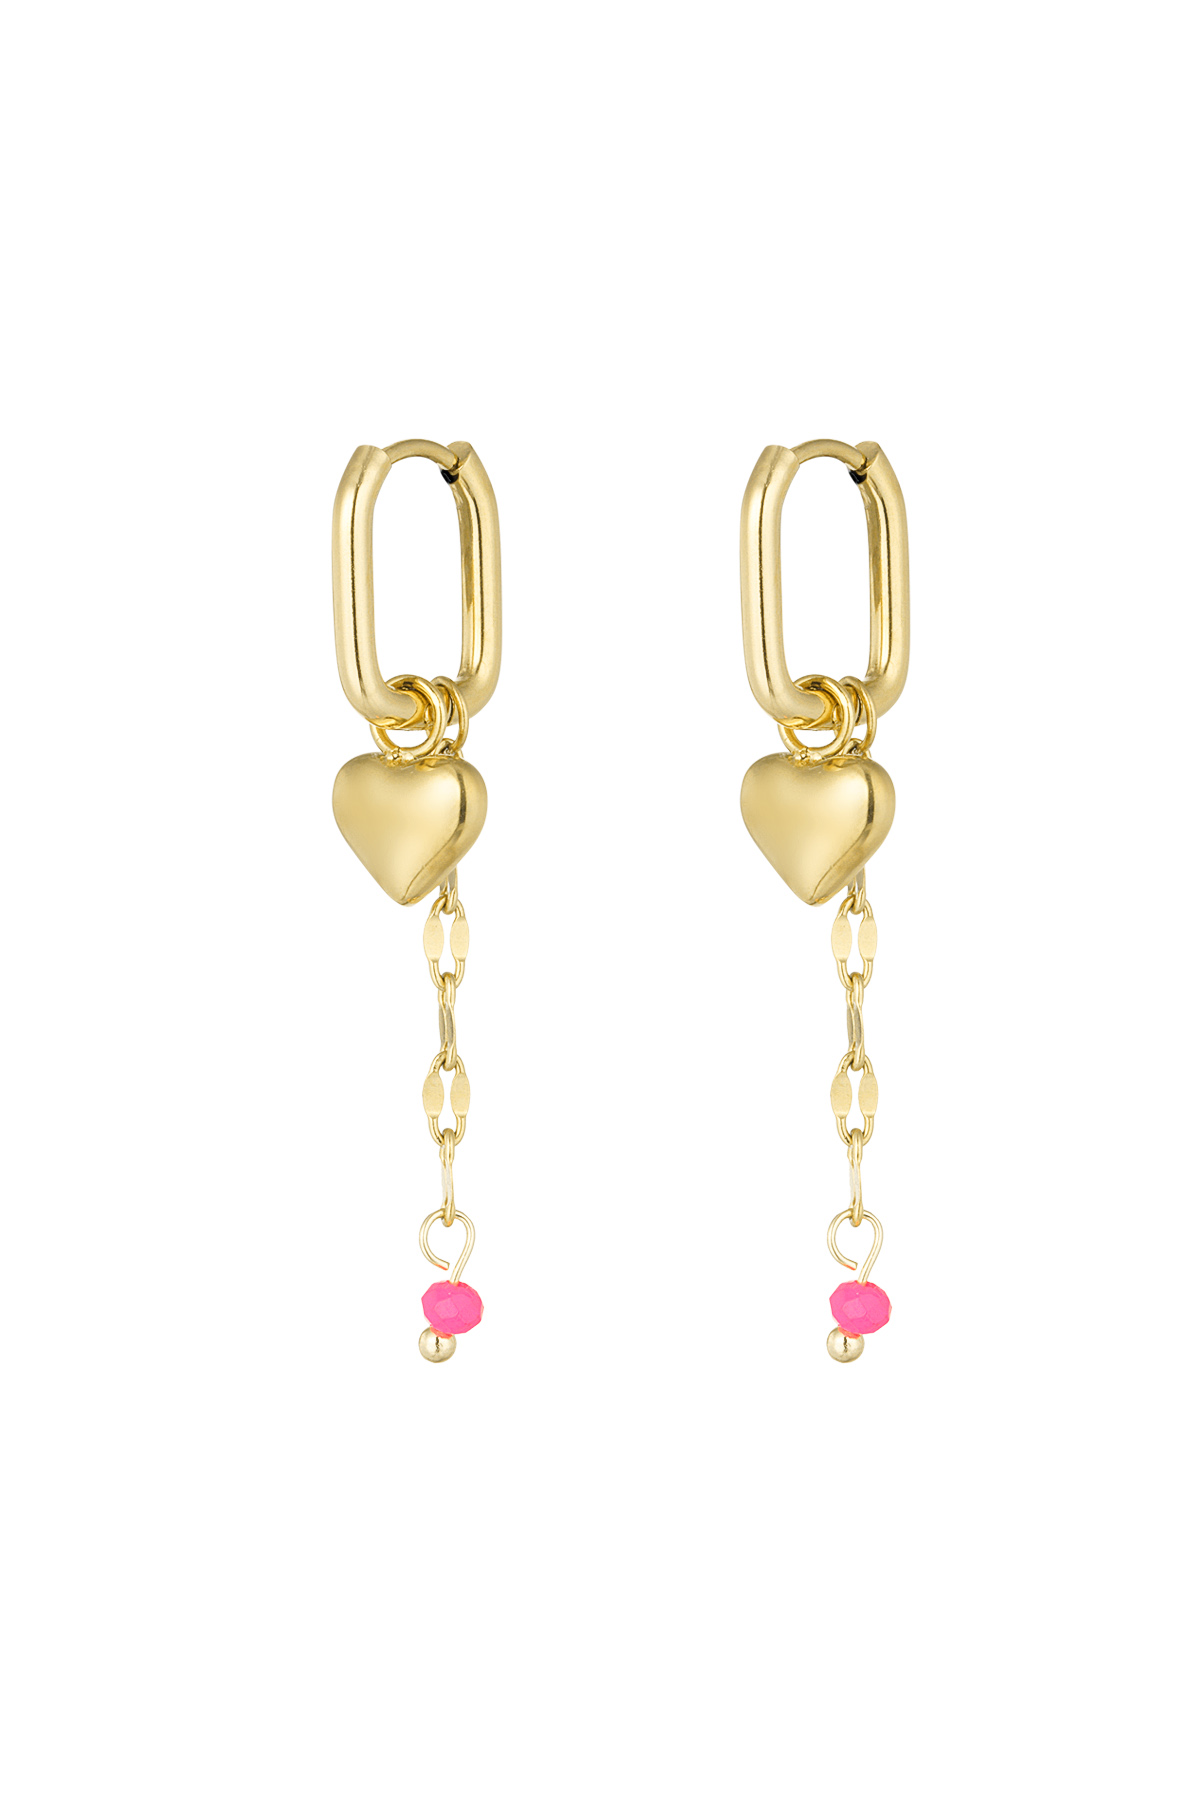 Forever love earrings - pink/gold 